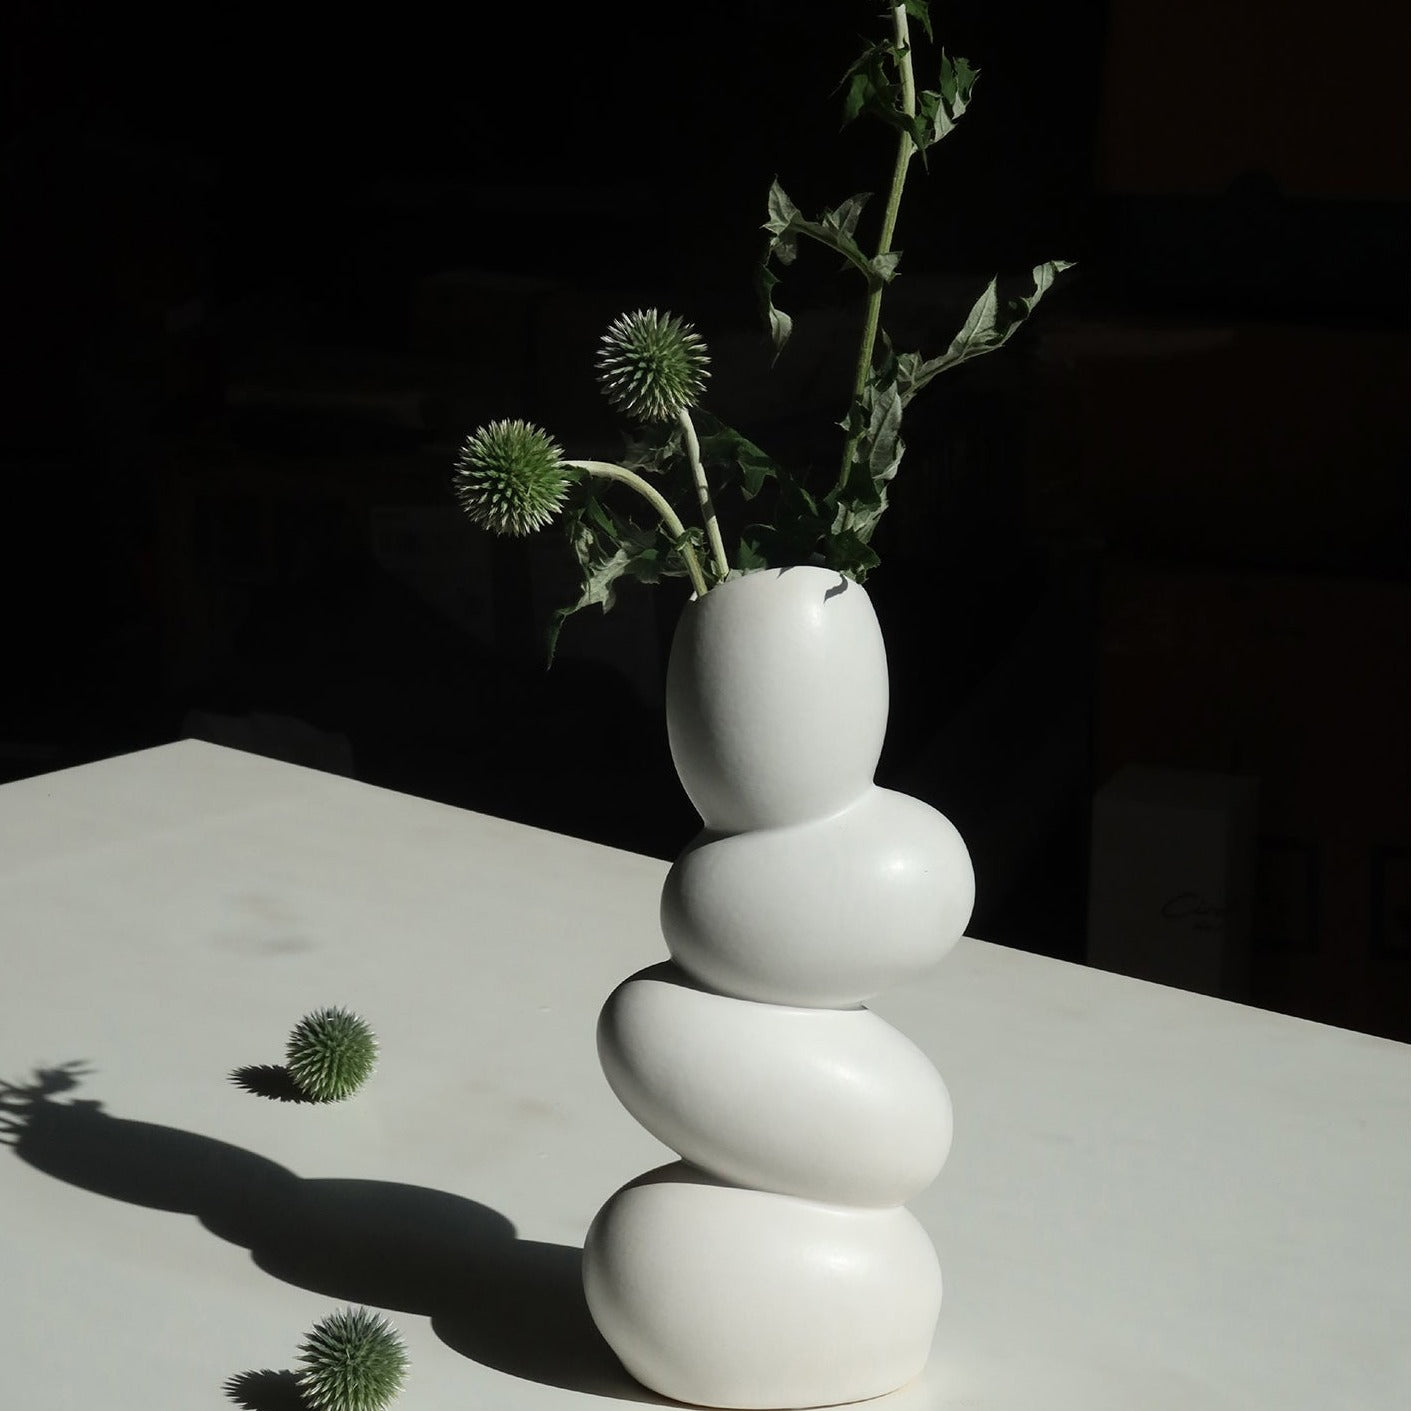 Elegant Matte Ceramic White Egg Shaped Vase